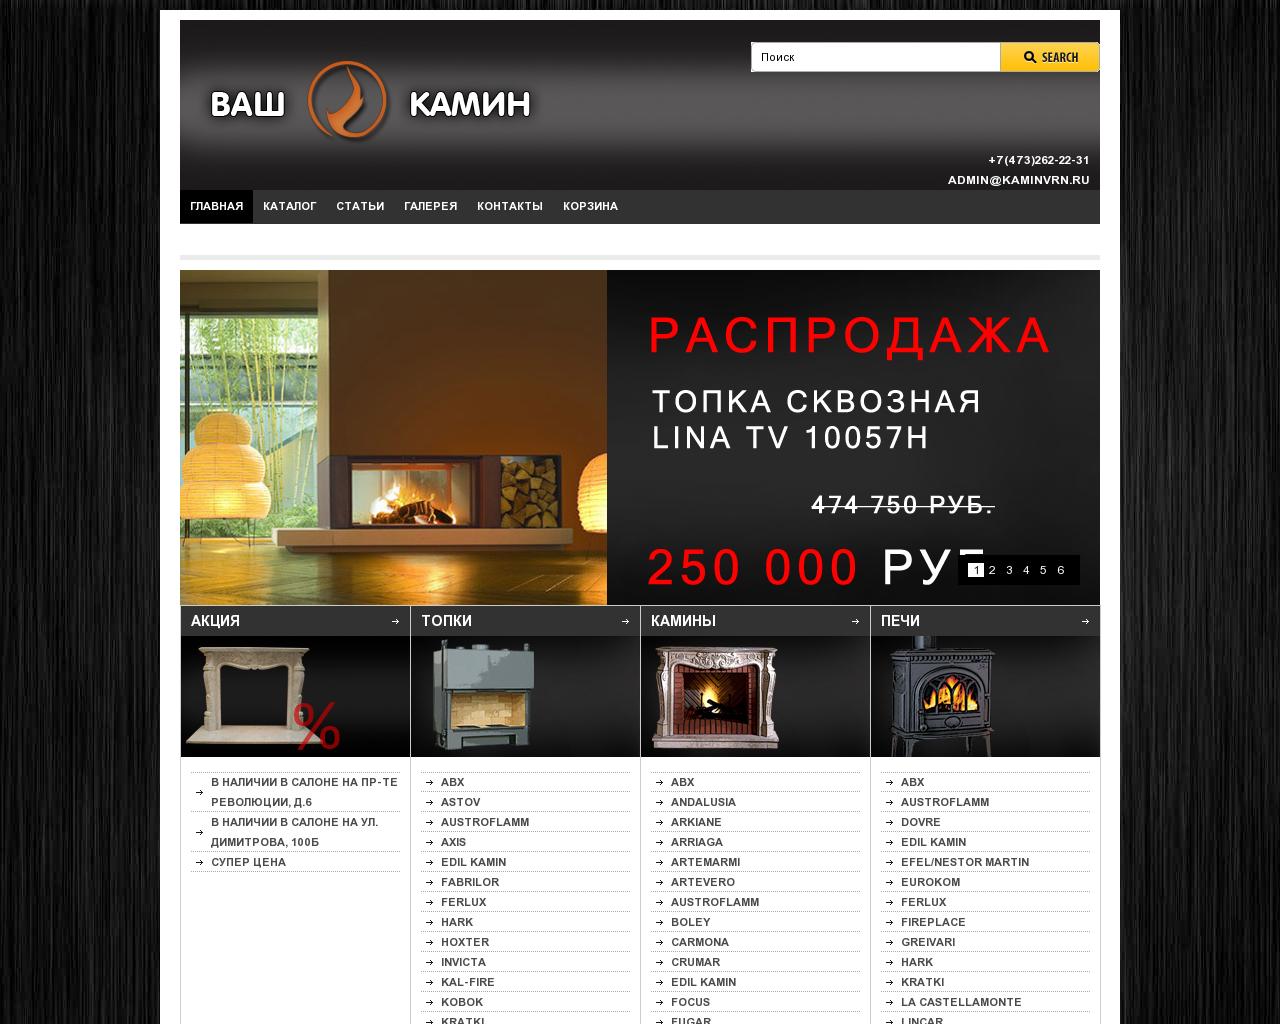 Изображение сайта kaminvrn.ru в разрешении 1280x1024